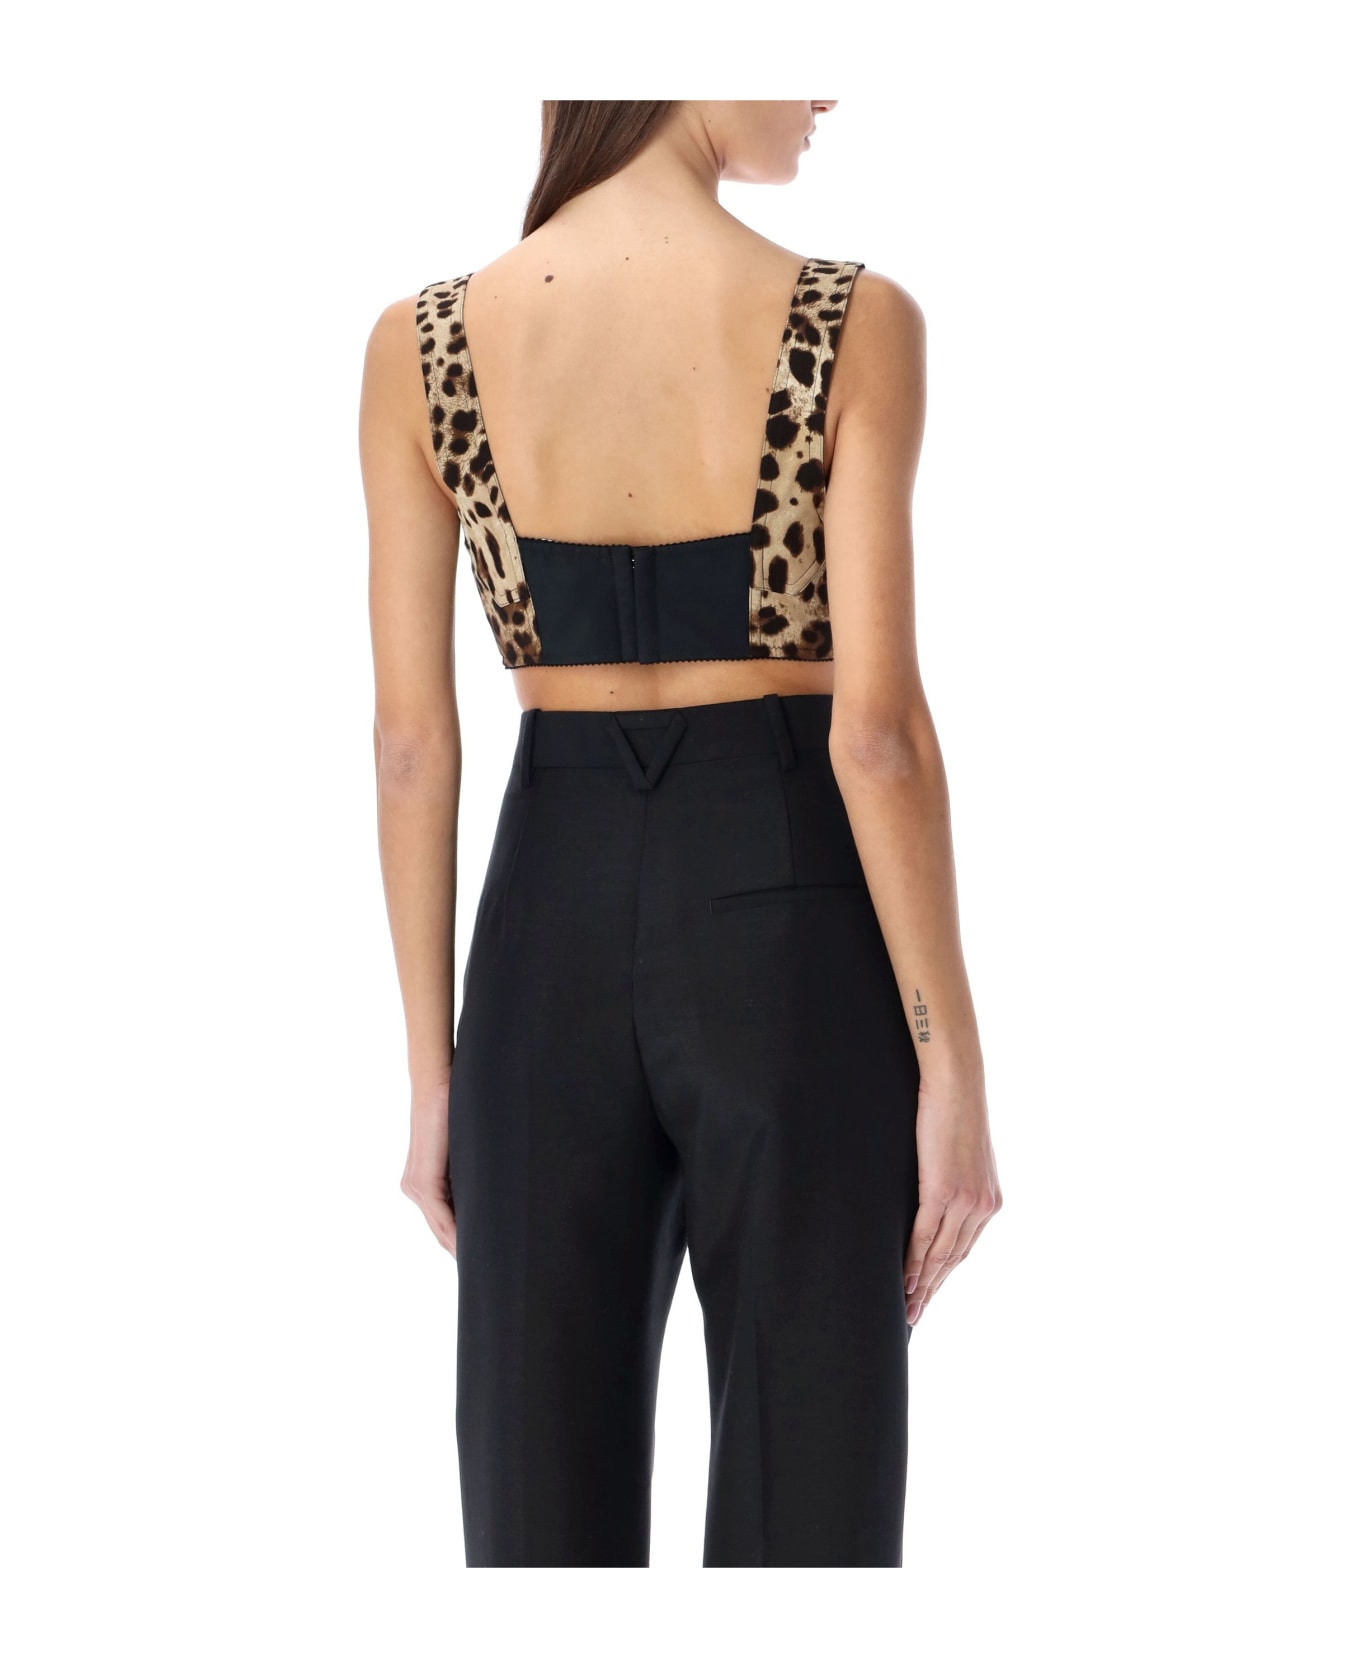 Dolce & Gabbana Leopard Print Short Bustier Top - LEO NEW